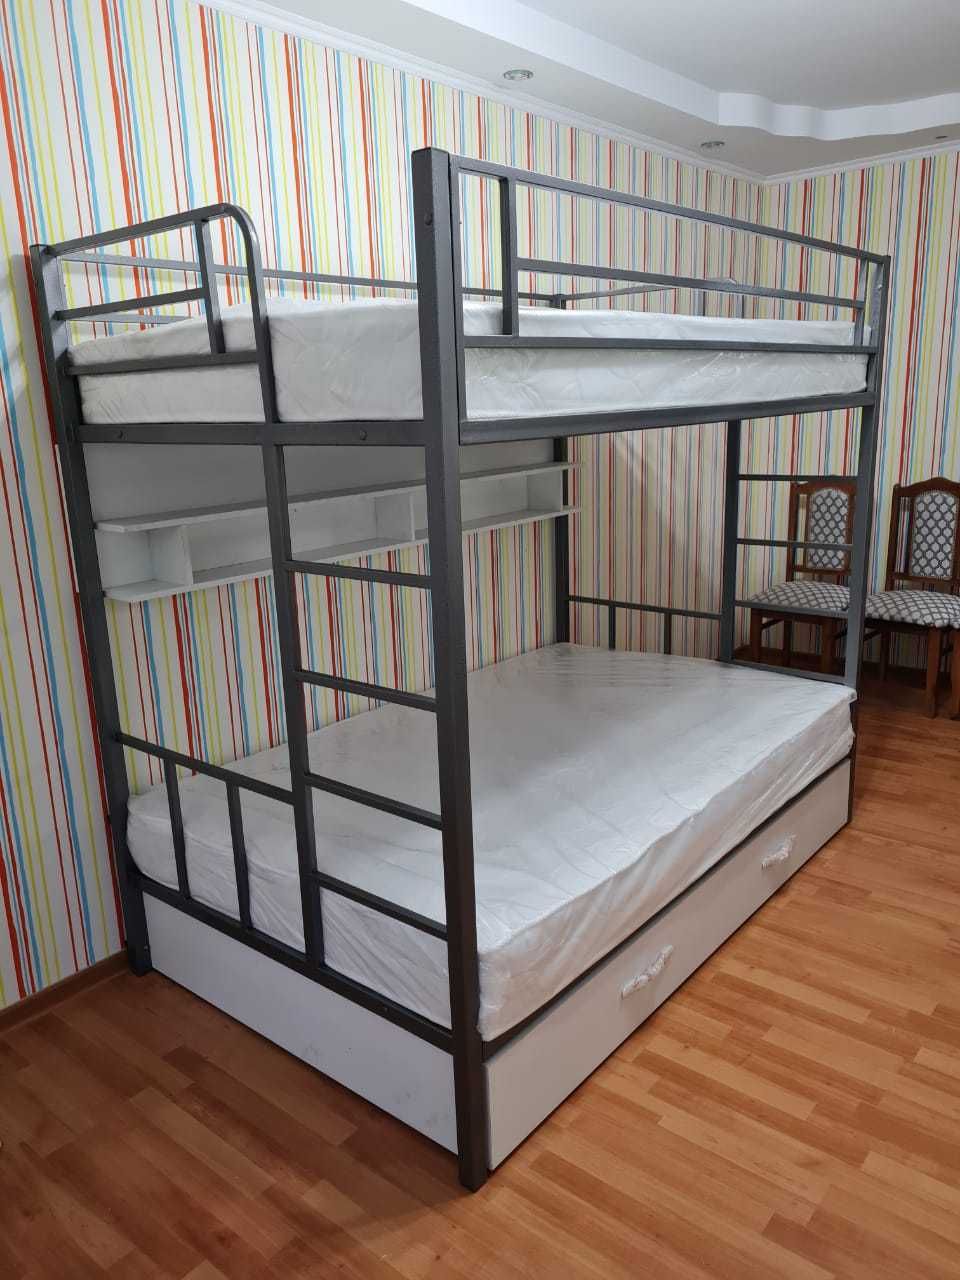 Металлические двухъярусные кровати для взрослых и детей (двуспальная).